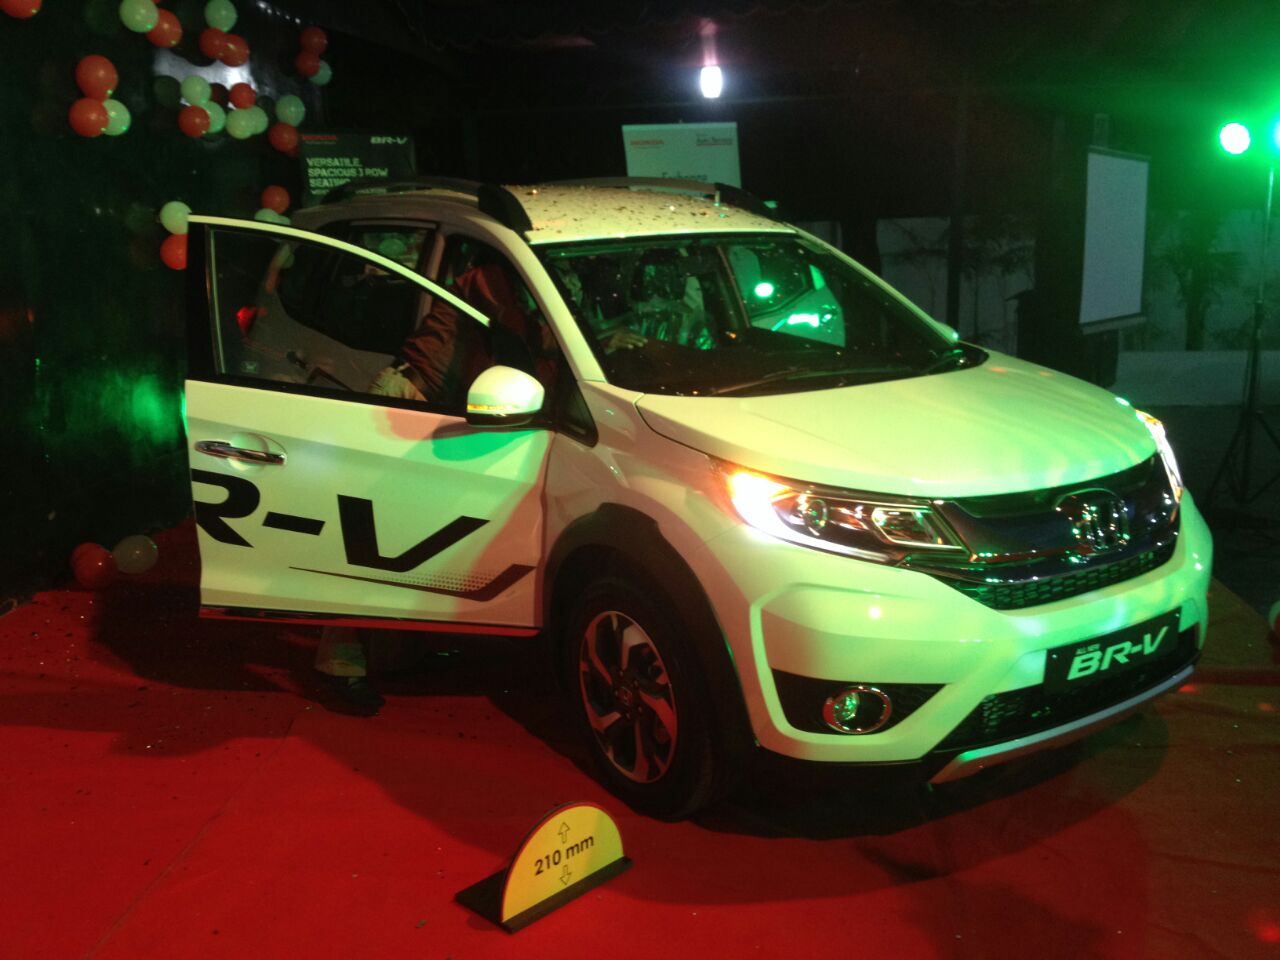 BR-V launch at Vision Honda Cochin Showroom